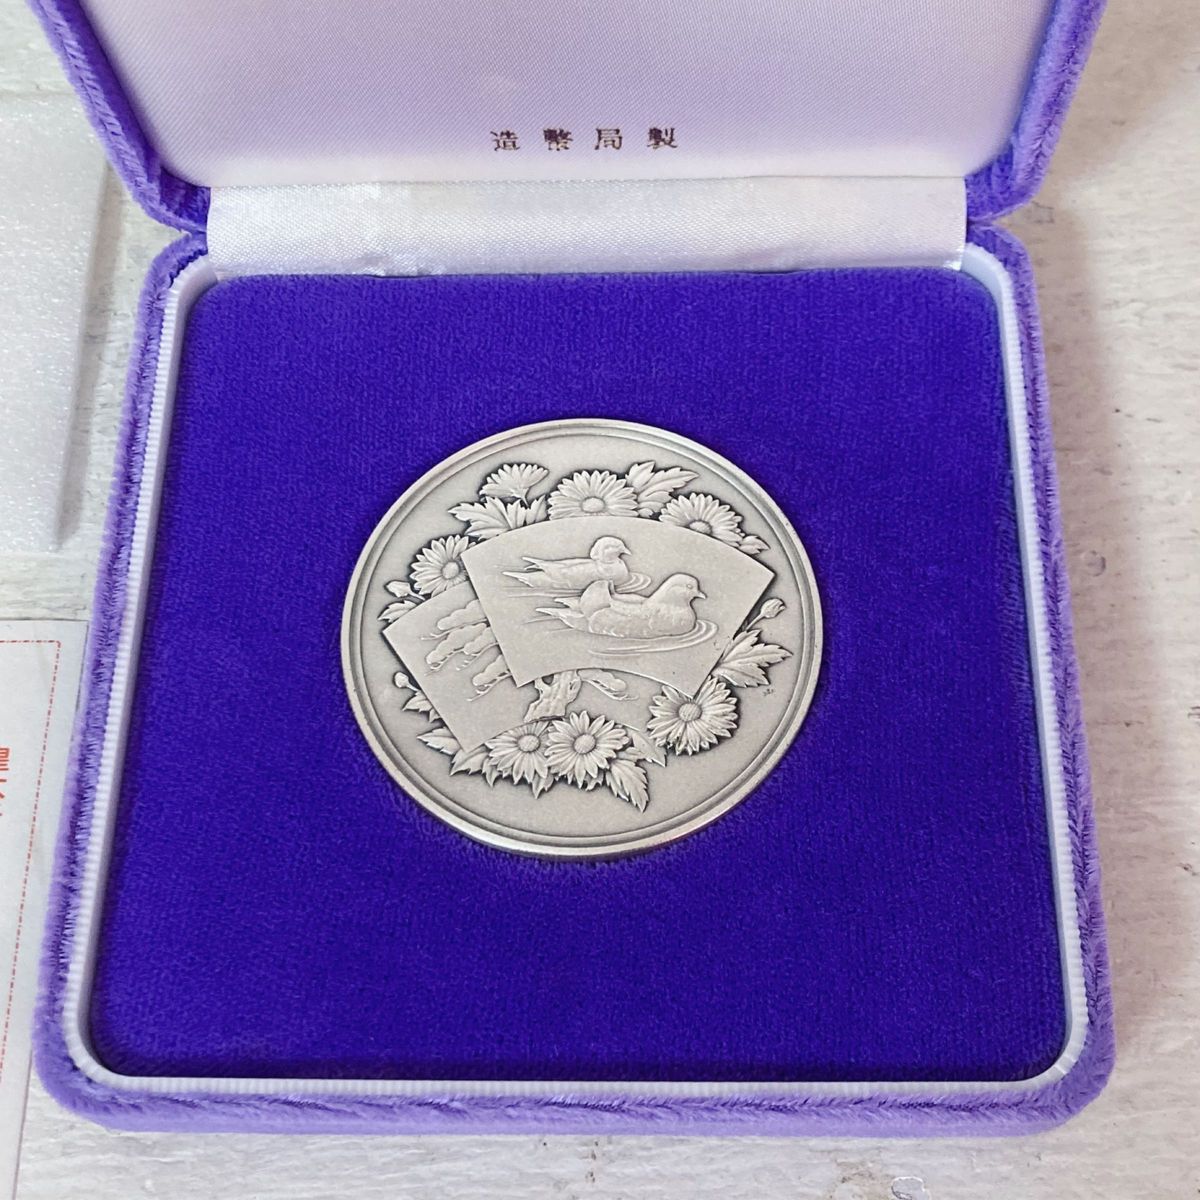 皇太子殿下御成婚記念貨幣 発行記念メダル 1993 純銀メダル